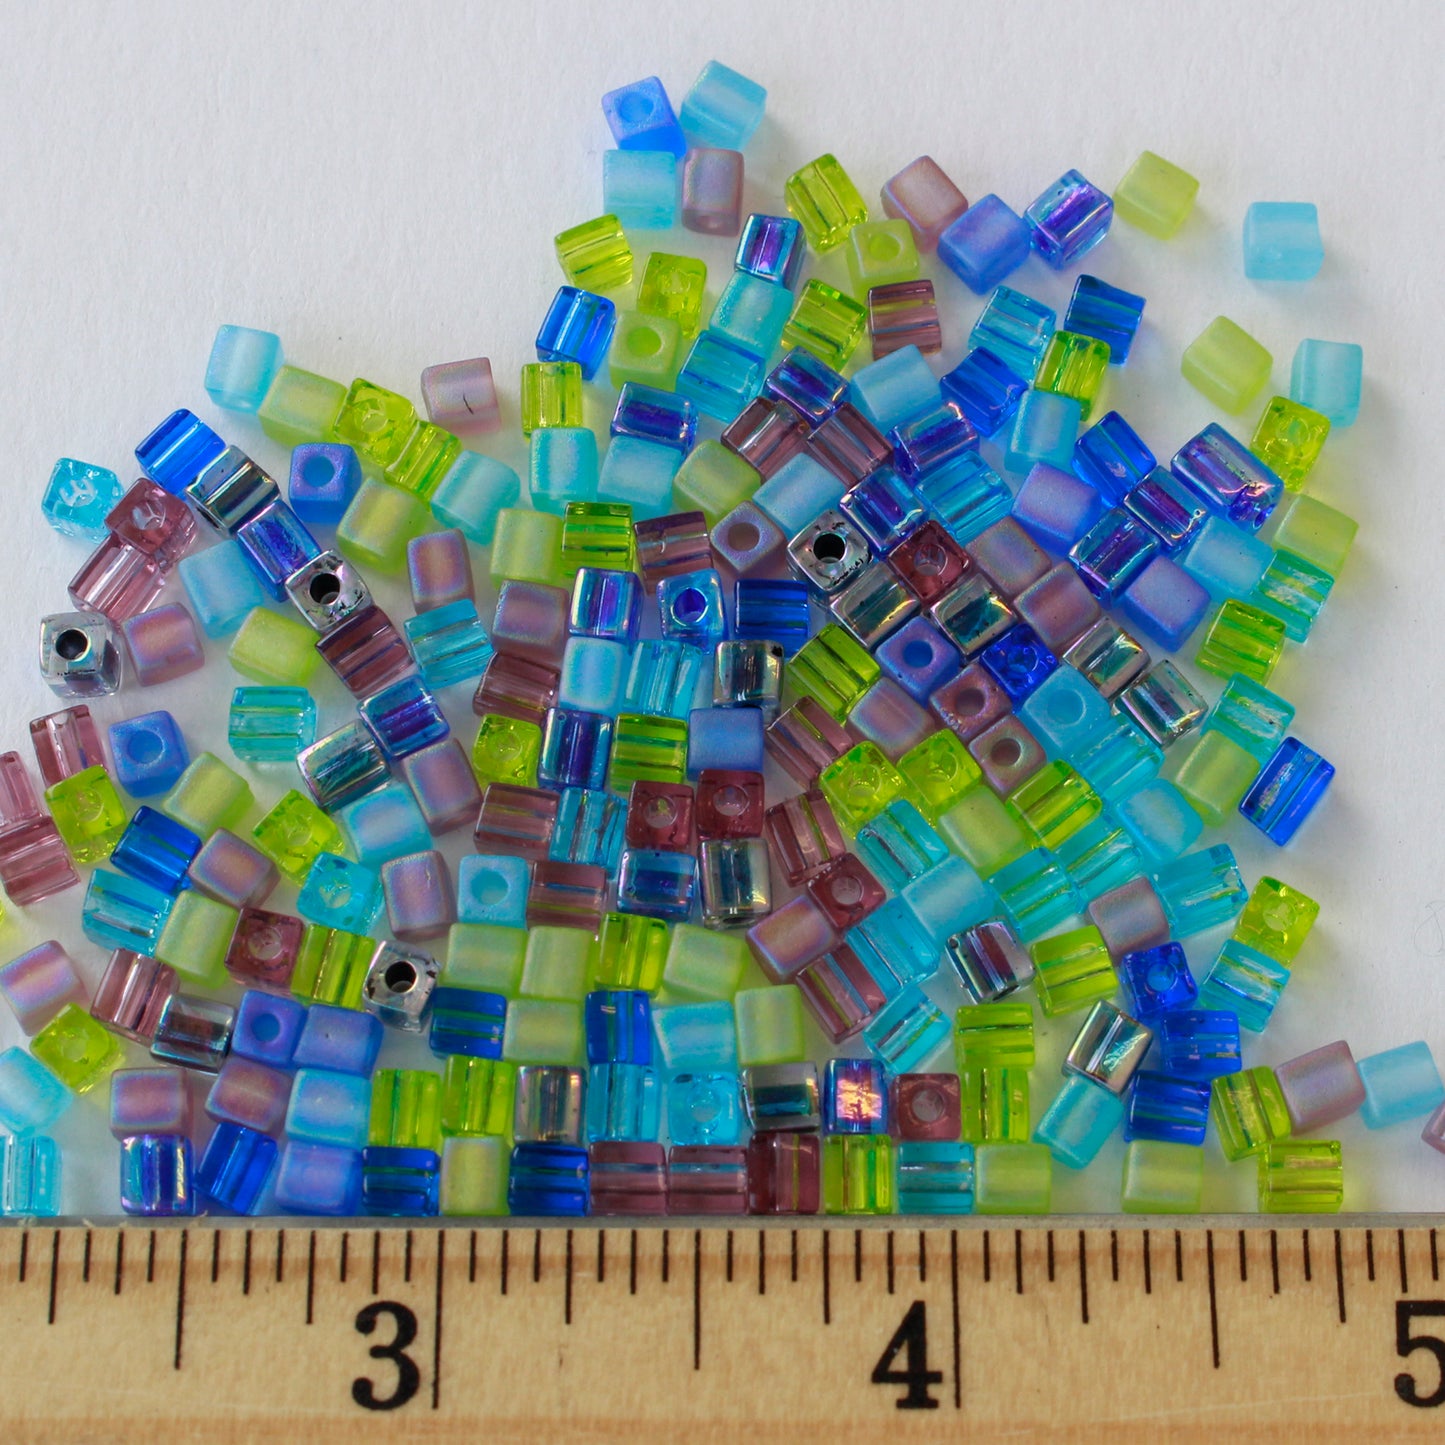 4mm Miyuki Cube Beads  - Jewel Tone Mixed Textures - 20 or 60 grams